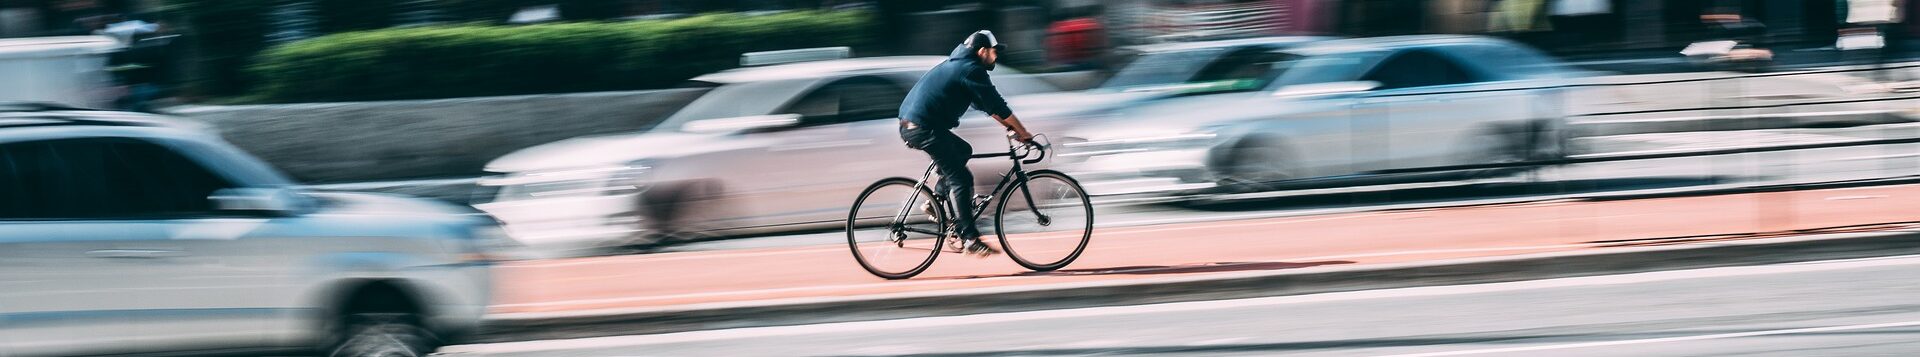 Ein Mensch auf einem Fahrrad fährt mitten auf der Straße entgegen dem Autoverkehr auf einem Radweg. Die Autos sind alle unschraf, der Radfahrer ist im Zentrum des Bildes und scharf